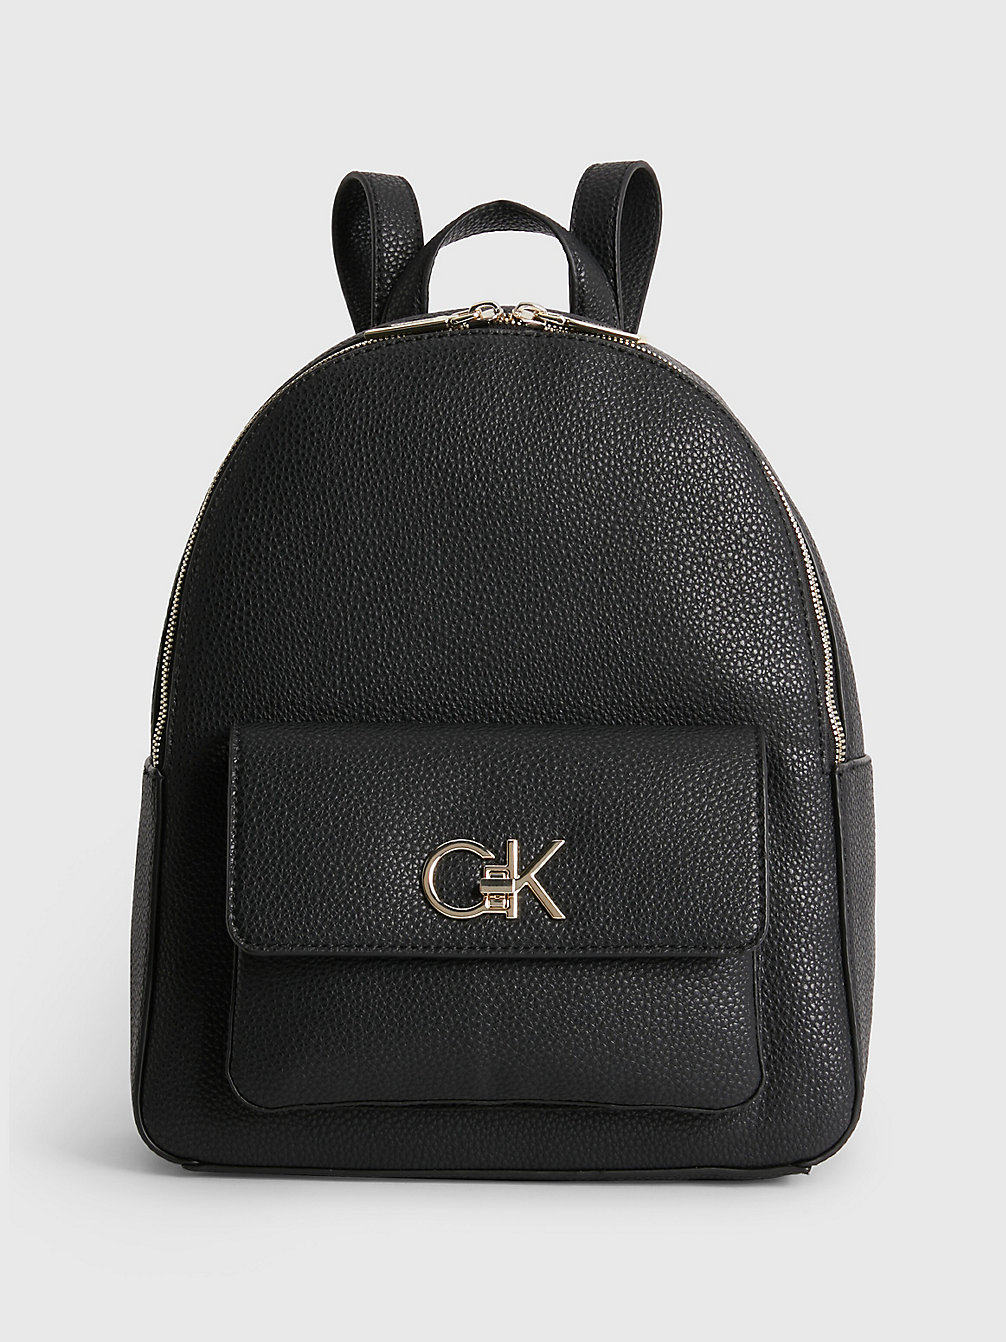 CK BLACK > Runder Rucksack Aus Recyceltem Material > undefined Damen - Calvin Klein